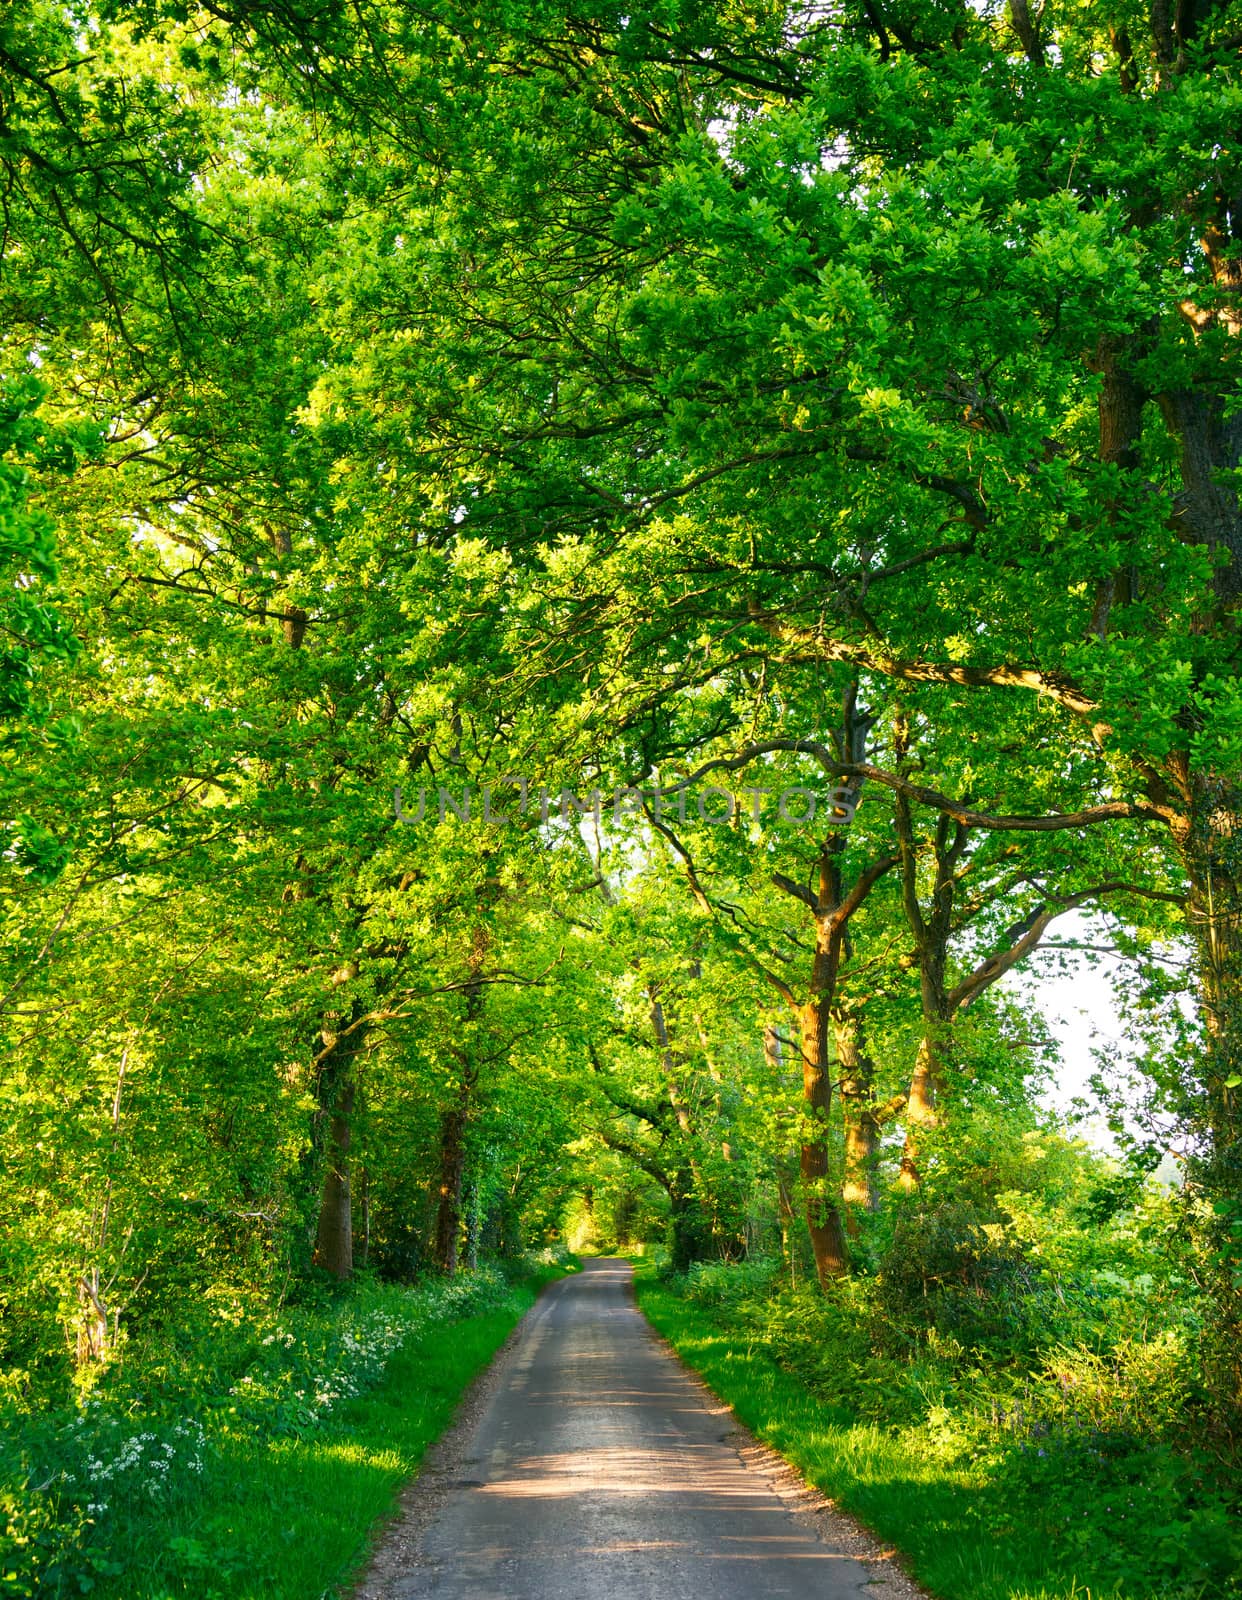 Green oak road by naumoid